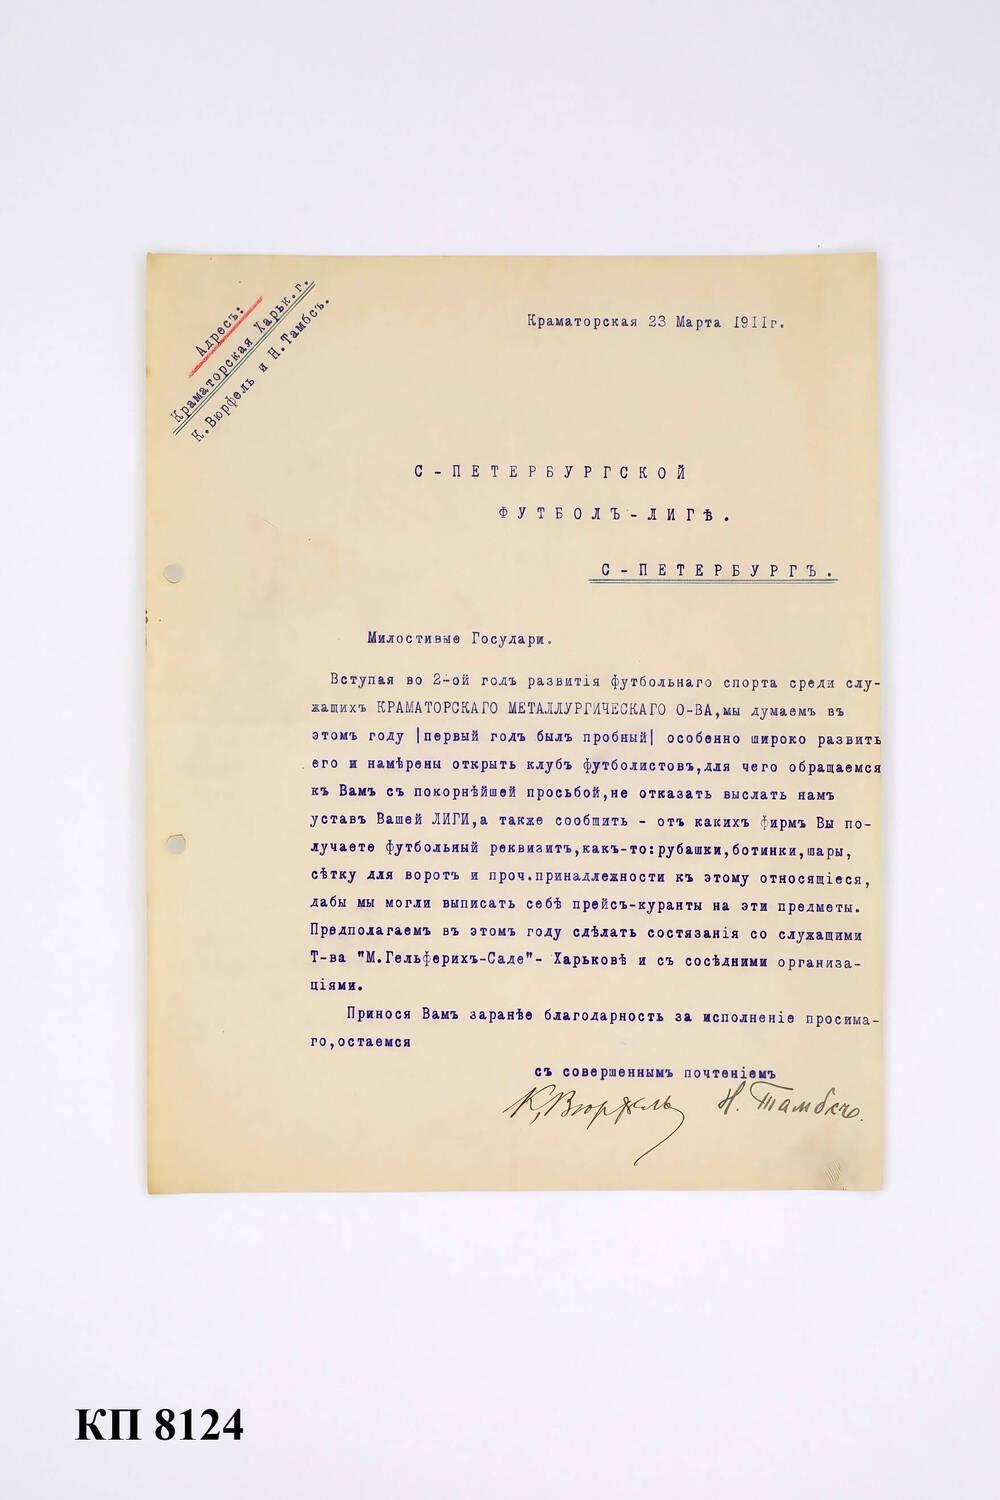 Письмо, адресовано С-Петербургской футбол-лиге, 23 марта 1911 г.